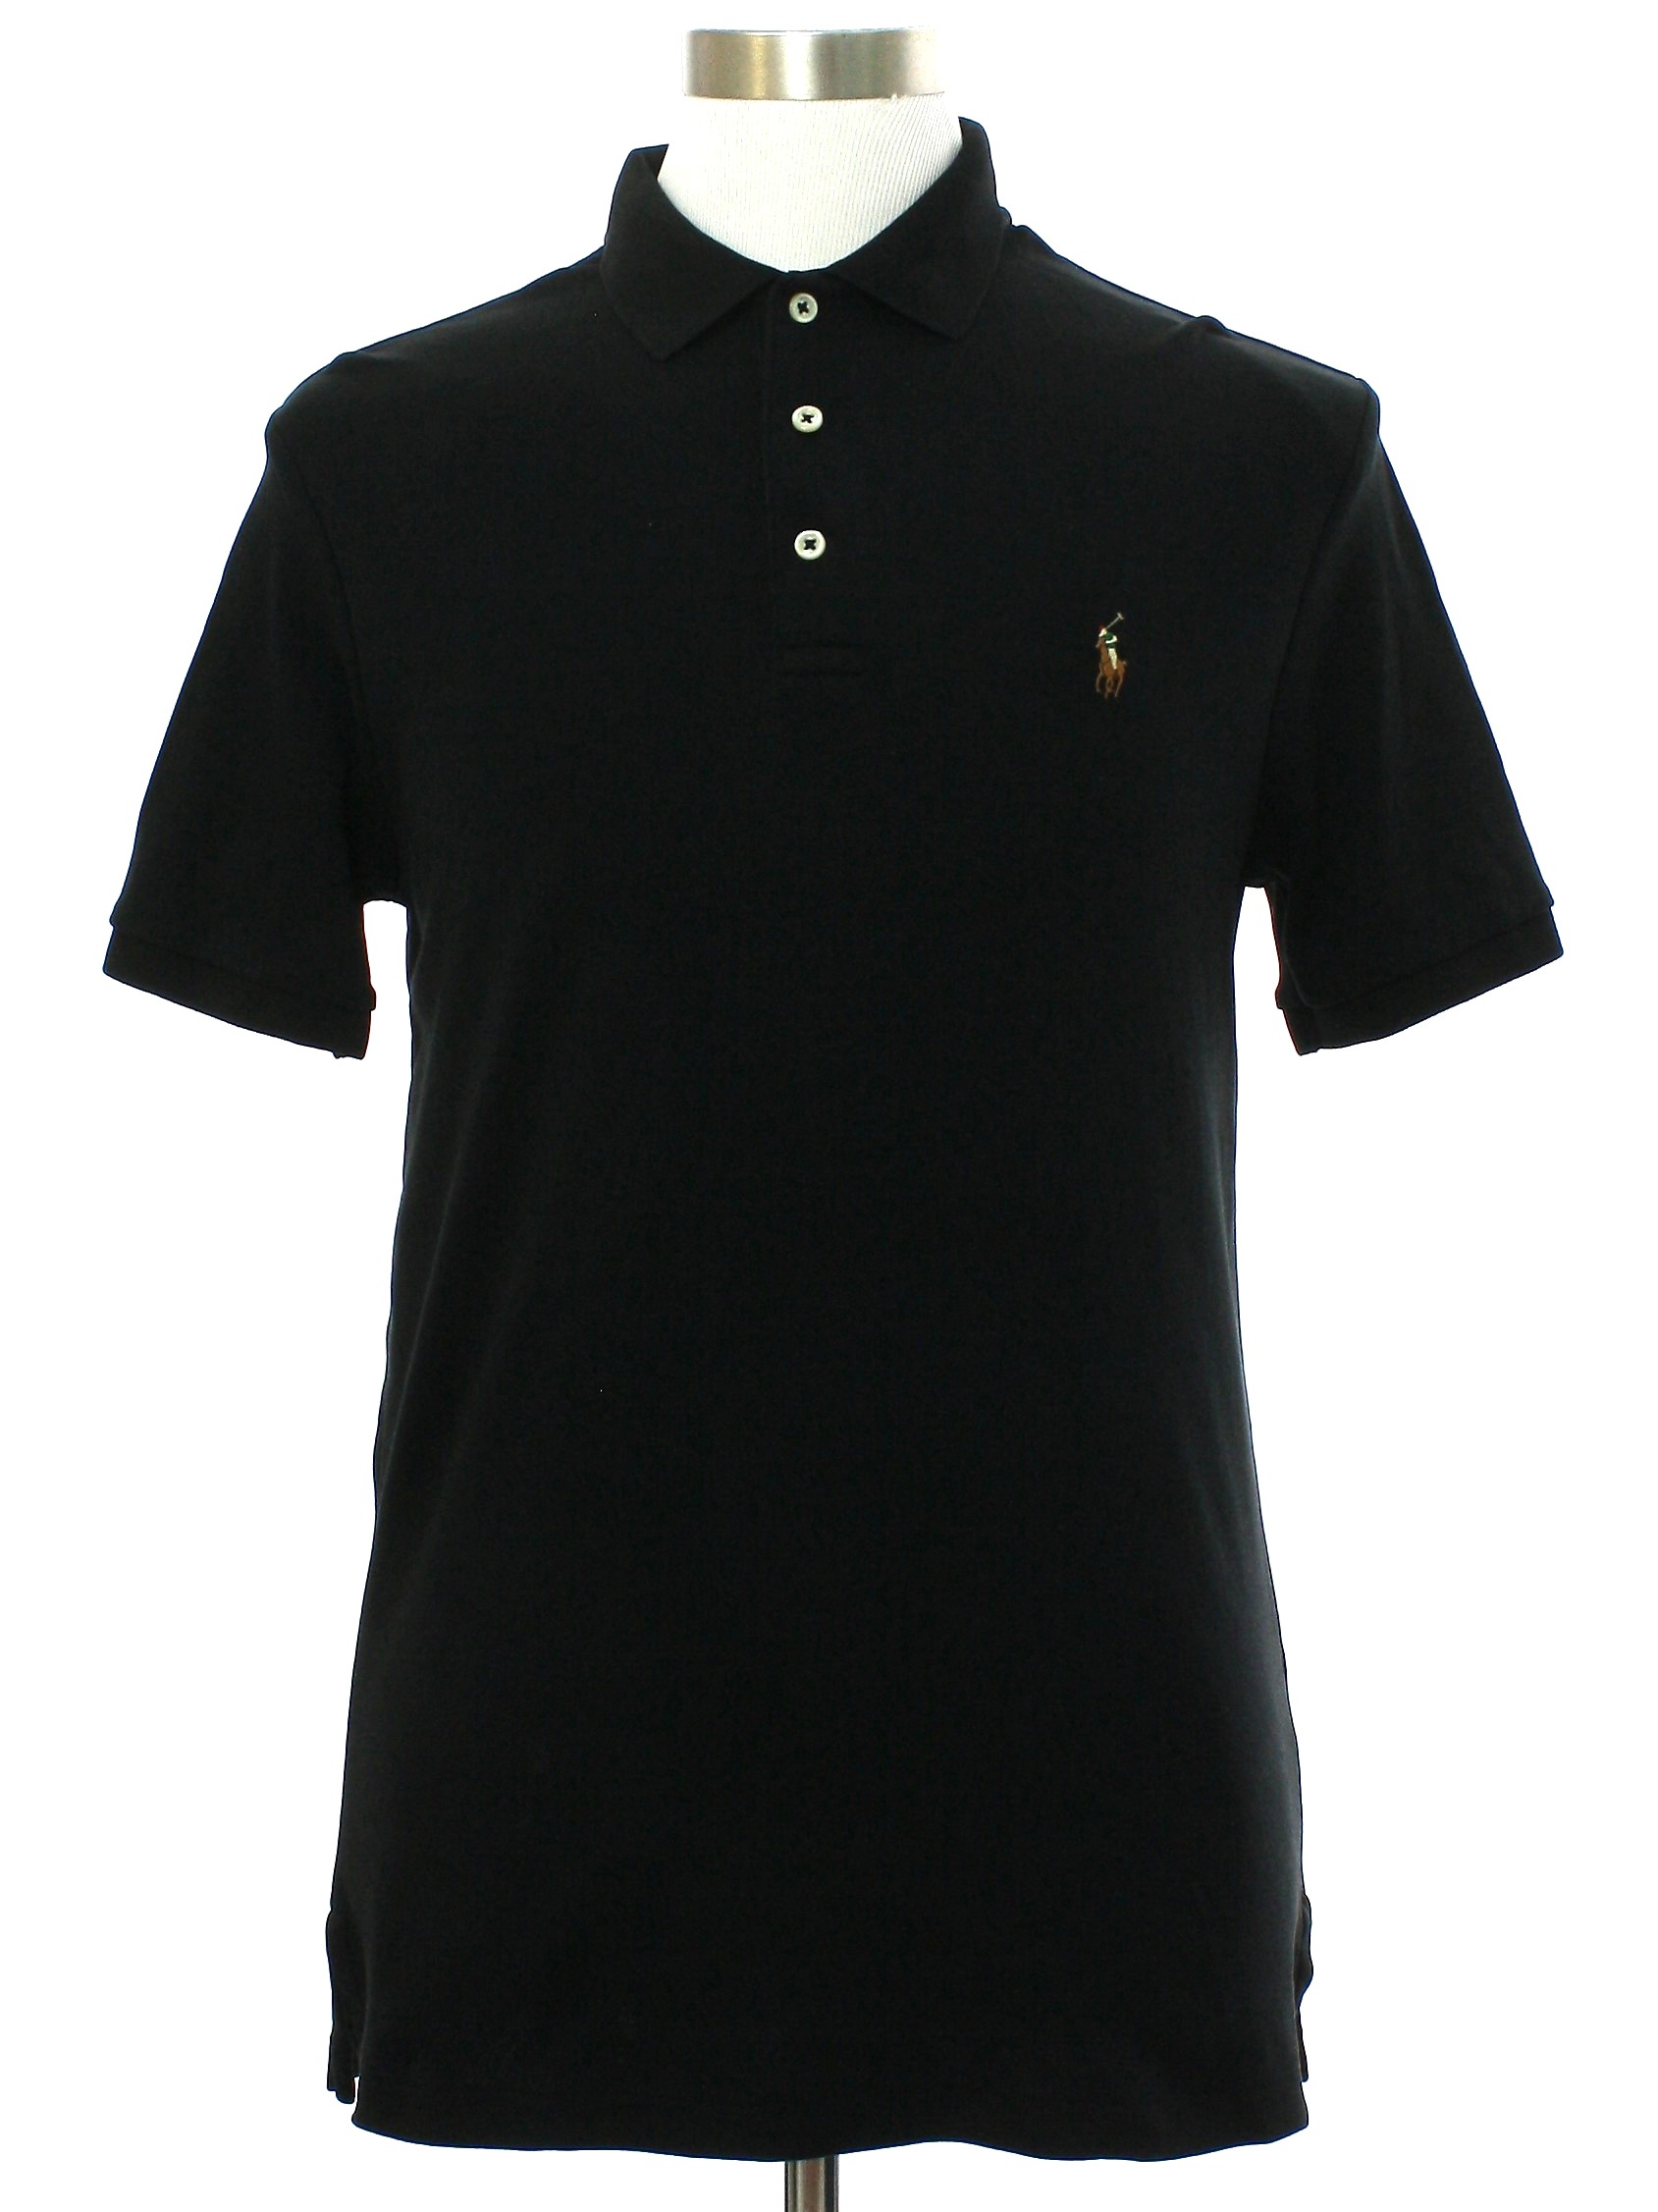 Shirt: Newer Than 90s -Polo Ralph Lauren- Mens black fine cotton